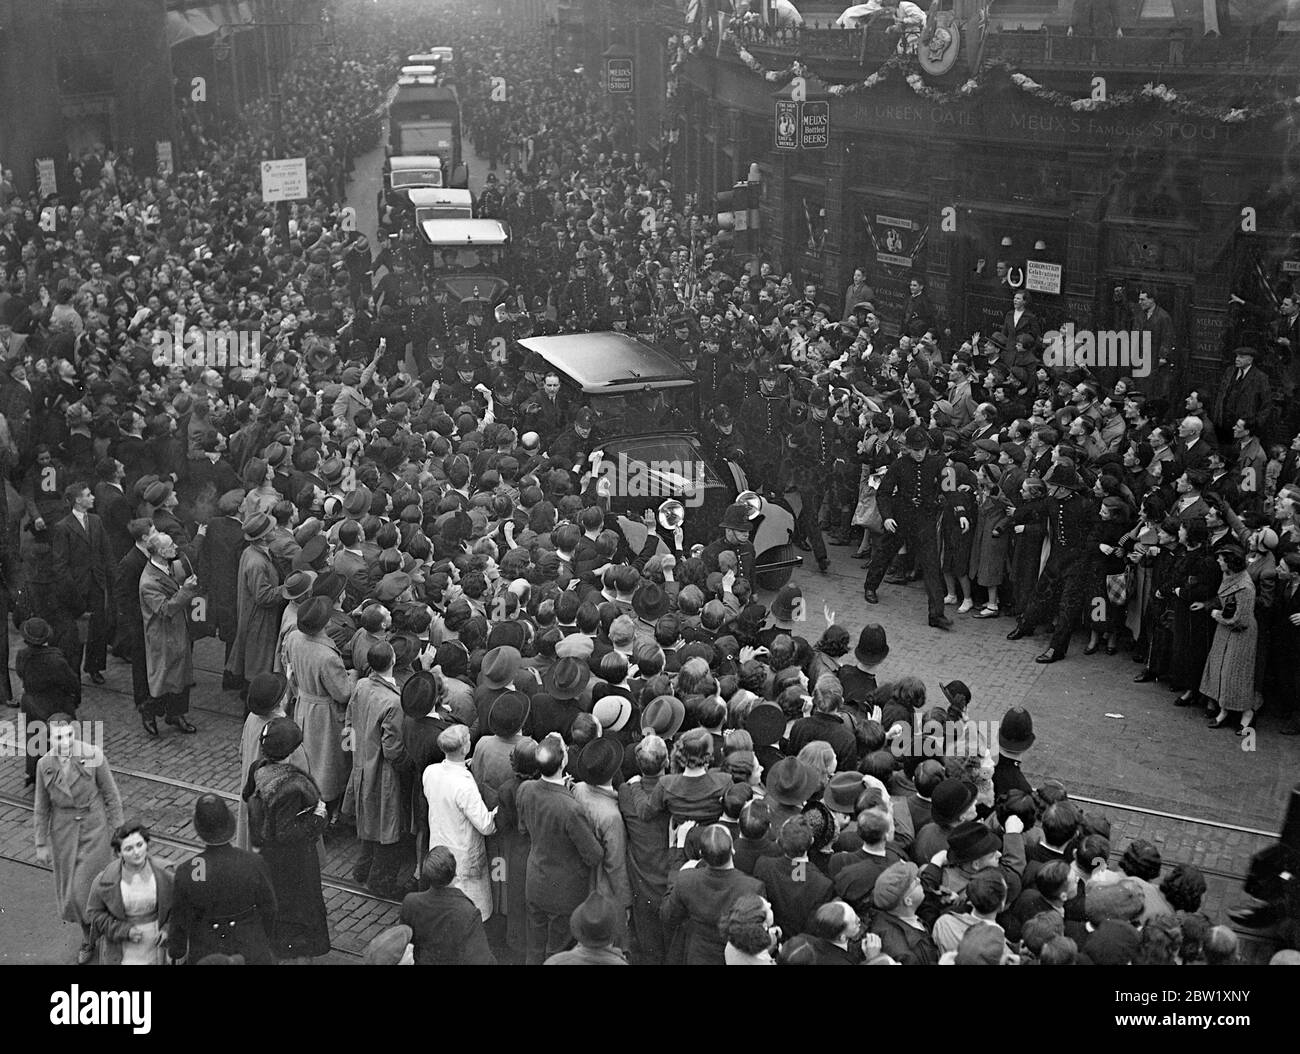 Modo della polizia per auto reale a Hoxton. Il giorno dopo la loro incoronazione, il Re e la Regina fecero un viaggio attraverso le strade decorate dei quartieri più poveri di Londra. Migliaia di persone si riunirono per salutarli e finirono in luoghi in cui la polizia doveva forzare la strada attraverso la folla per la Royal Car. Foto spettacoli: La polizia cerca di forzare un modo per la Royal auto attraverso le folle eccitate a Shepherdess Walk, Hoxton. 13 maggio 1937 Foto Stock